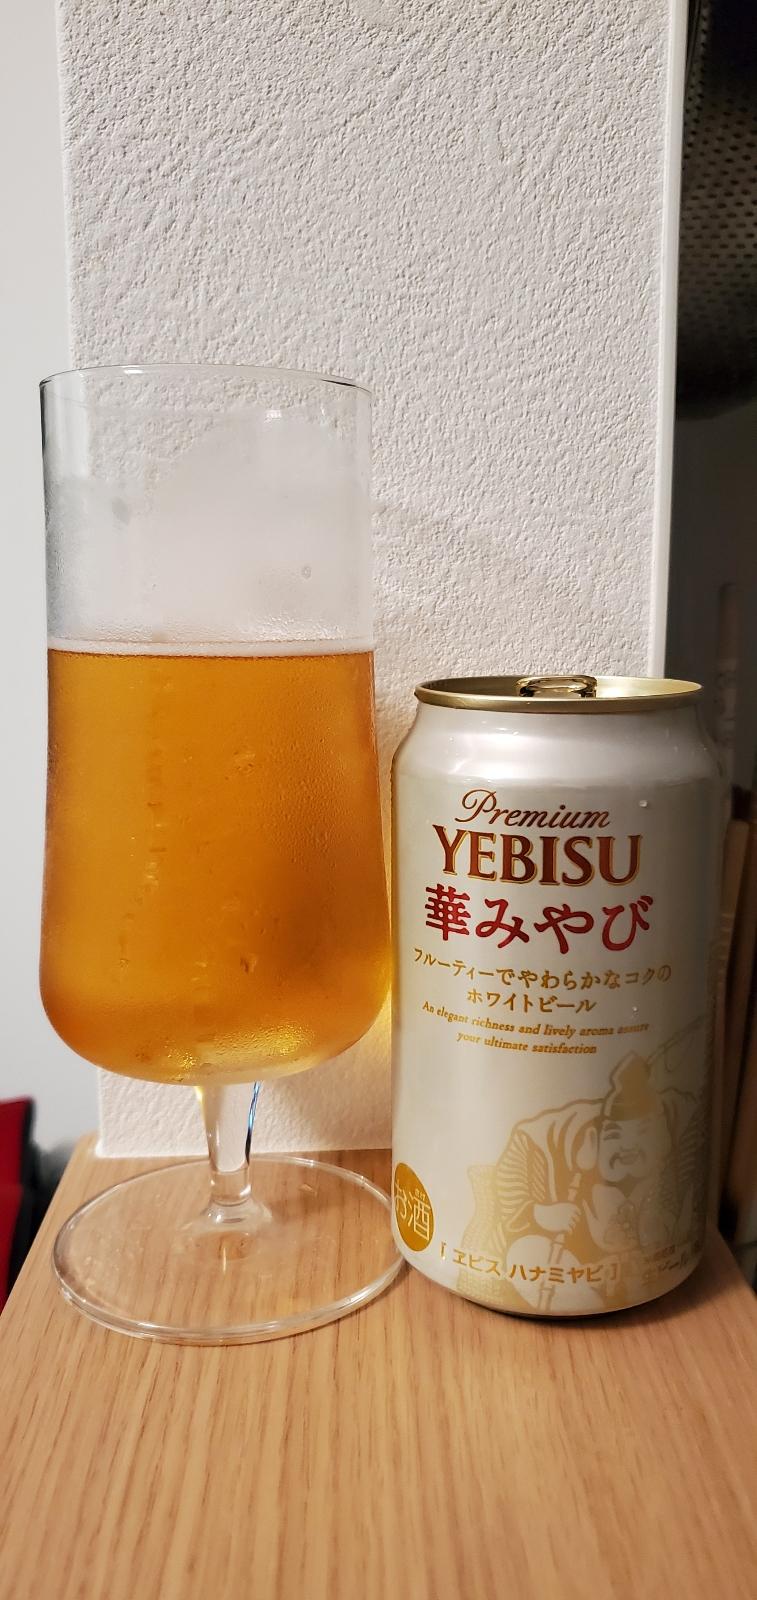 Yebisu Premium Hanamiyabi